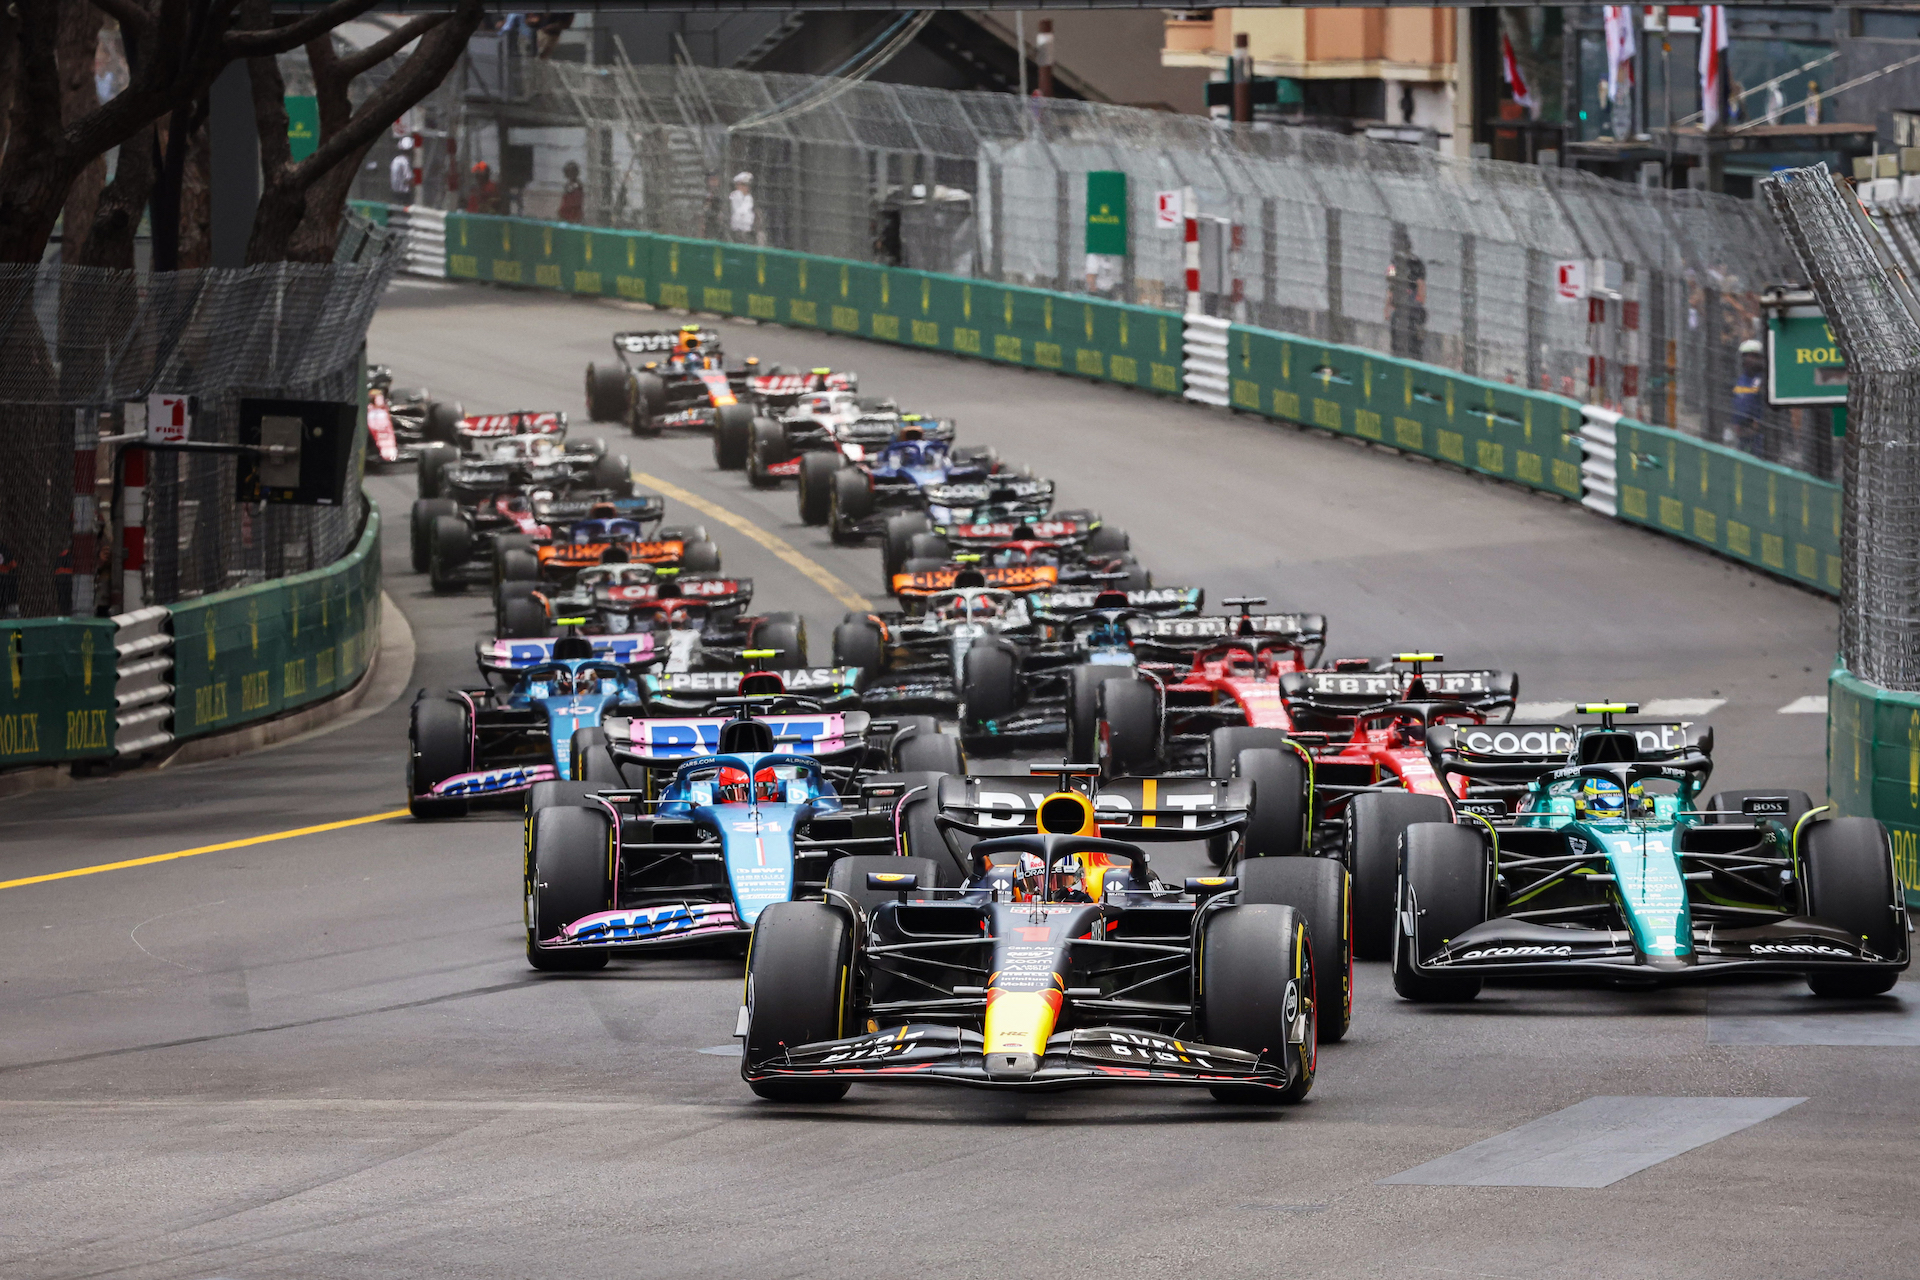 Monte Carlo, Monaco. 23rd May, 2019. Motorsports: FIA Formula One World  Championship 2019, Grand Prix of